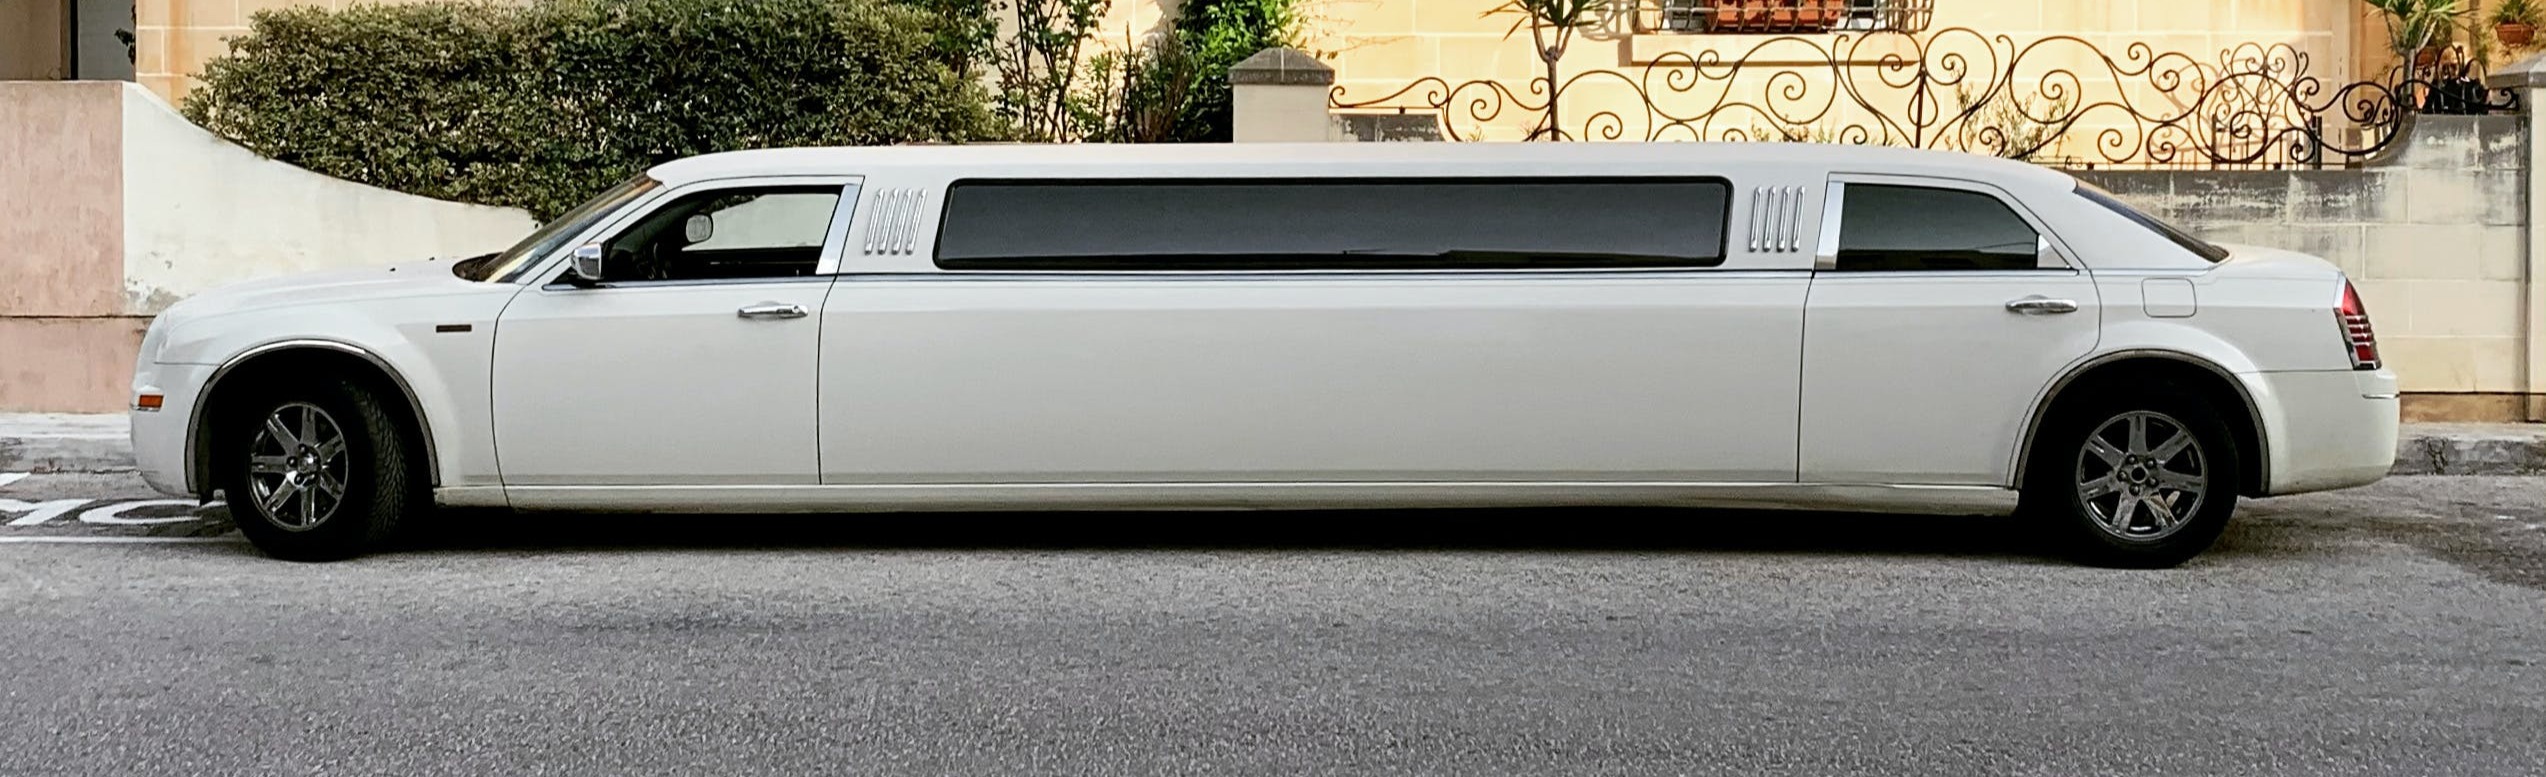 Chrysler limo